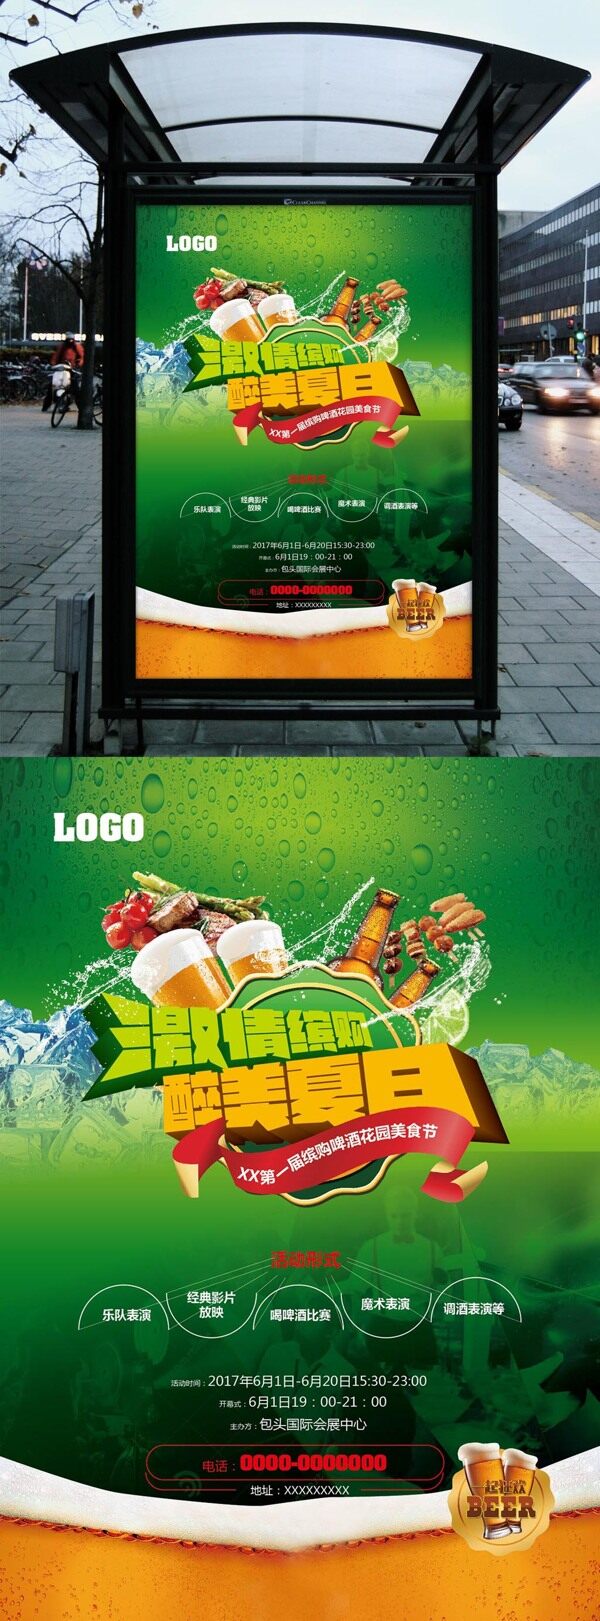 啤酒美食节海报